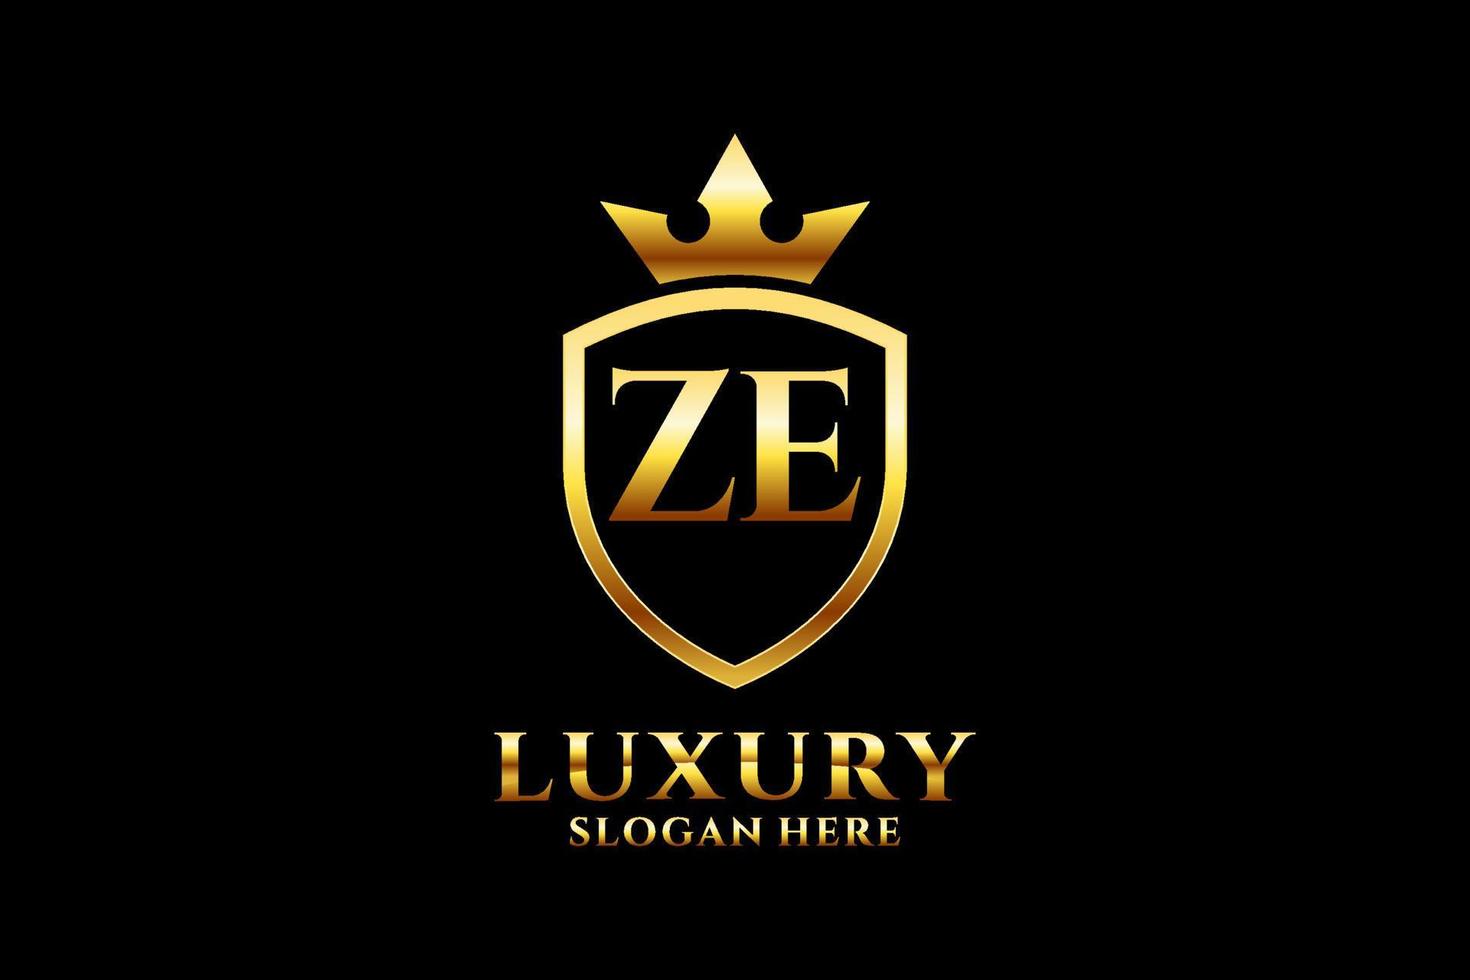 logotipo de monograma de lujo inicial ze elegante o plantilla de placa con pergaminos y corona real - perfecto para proyectos de marca de lujo vector